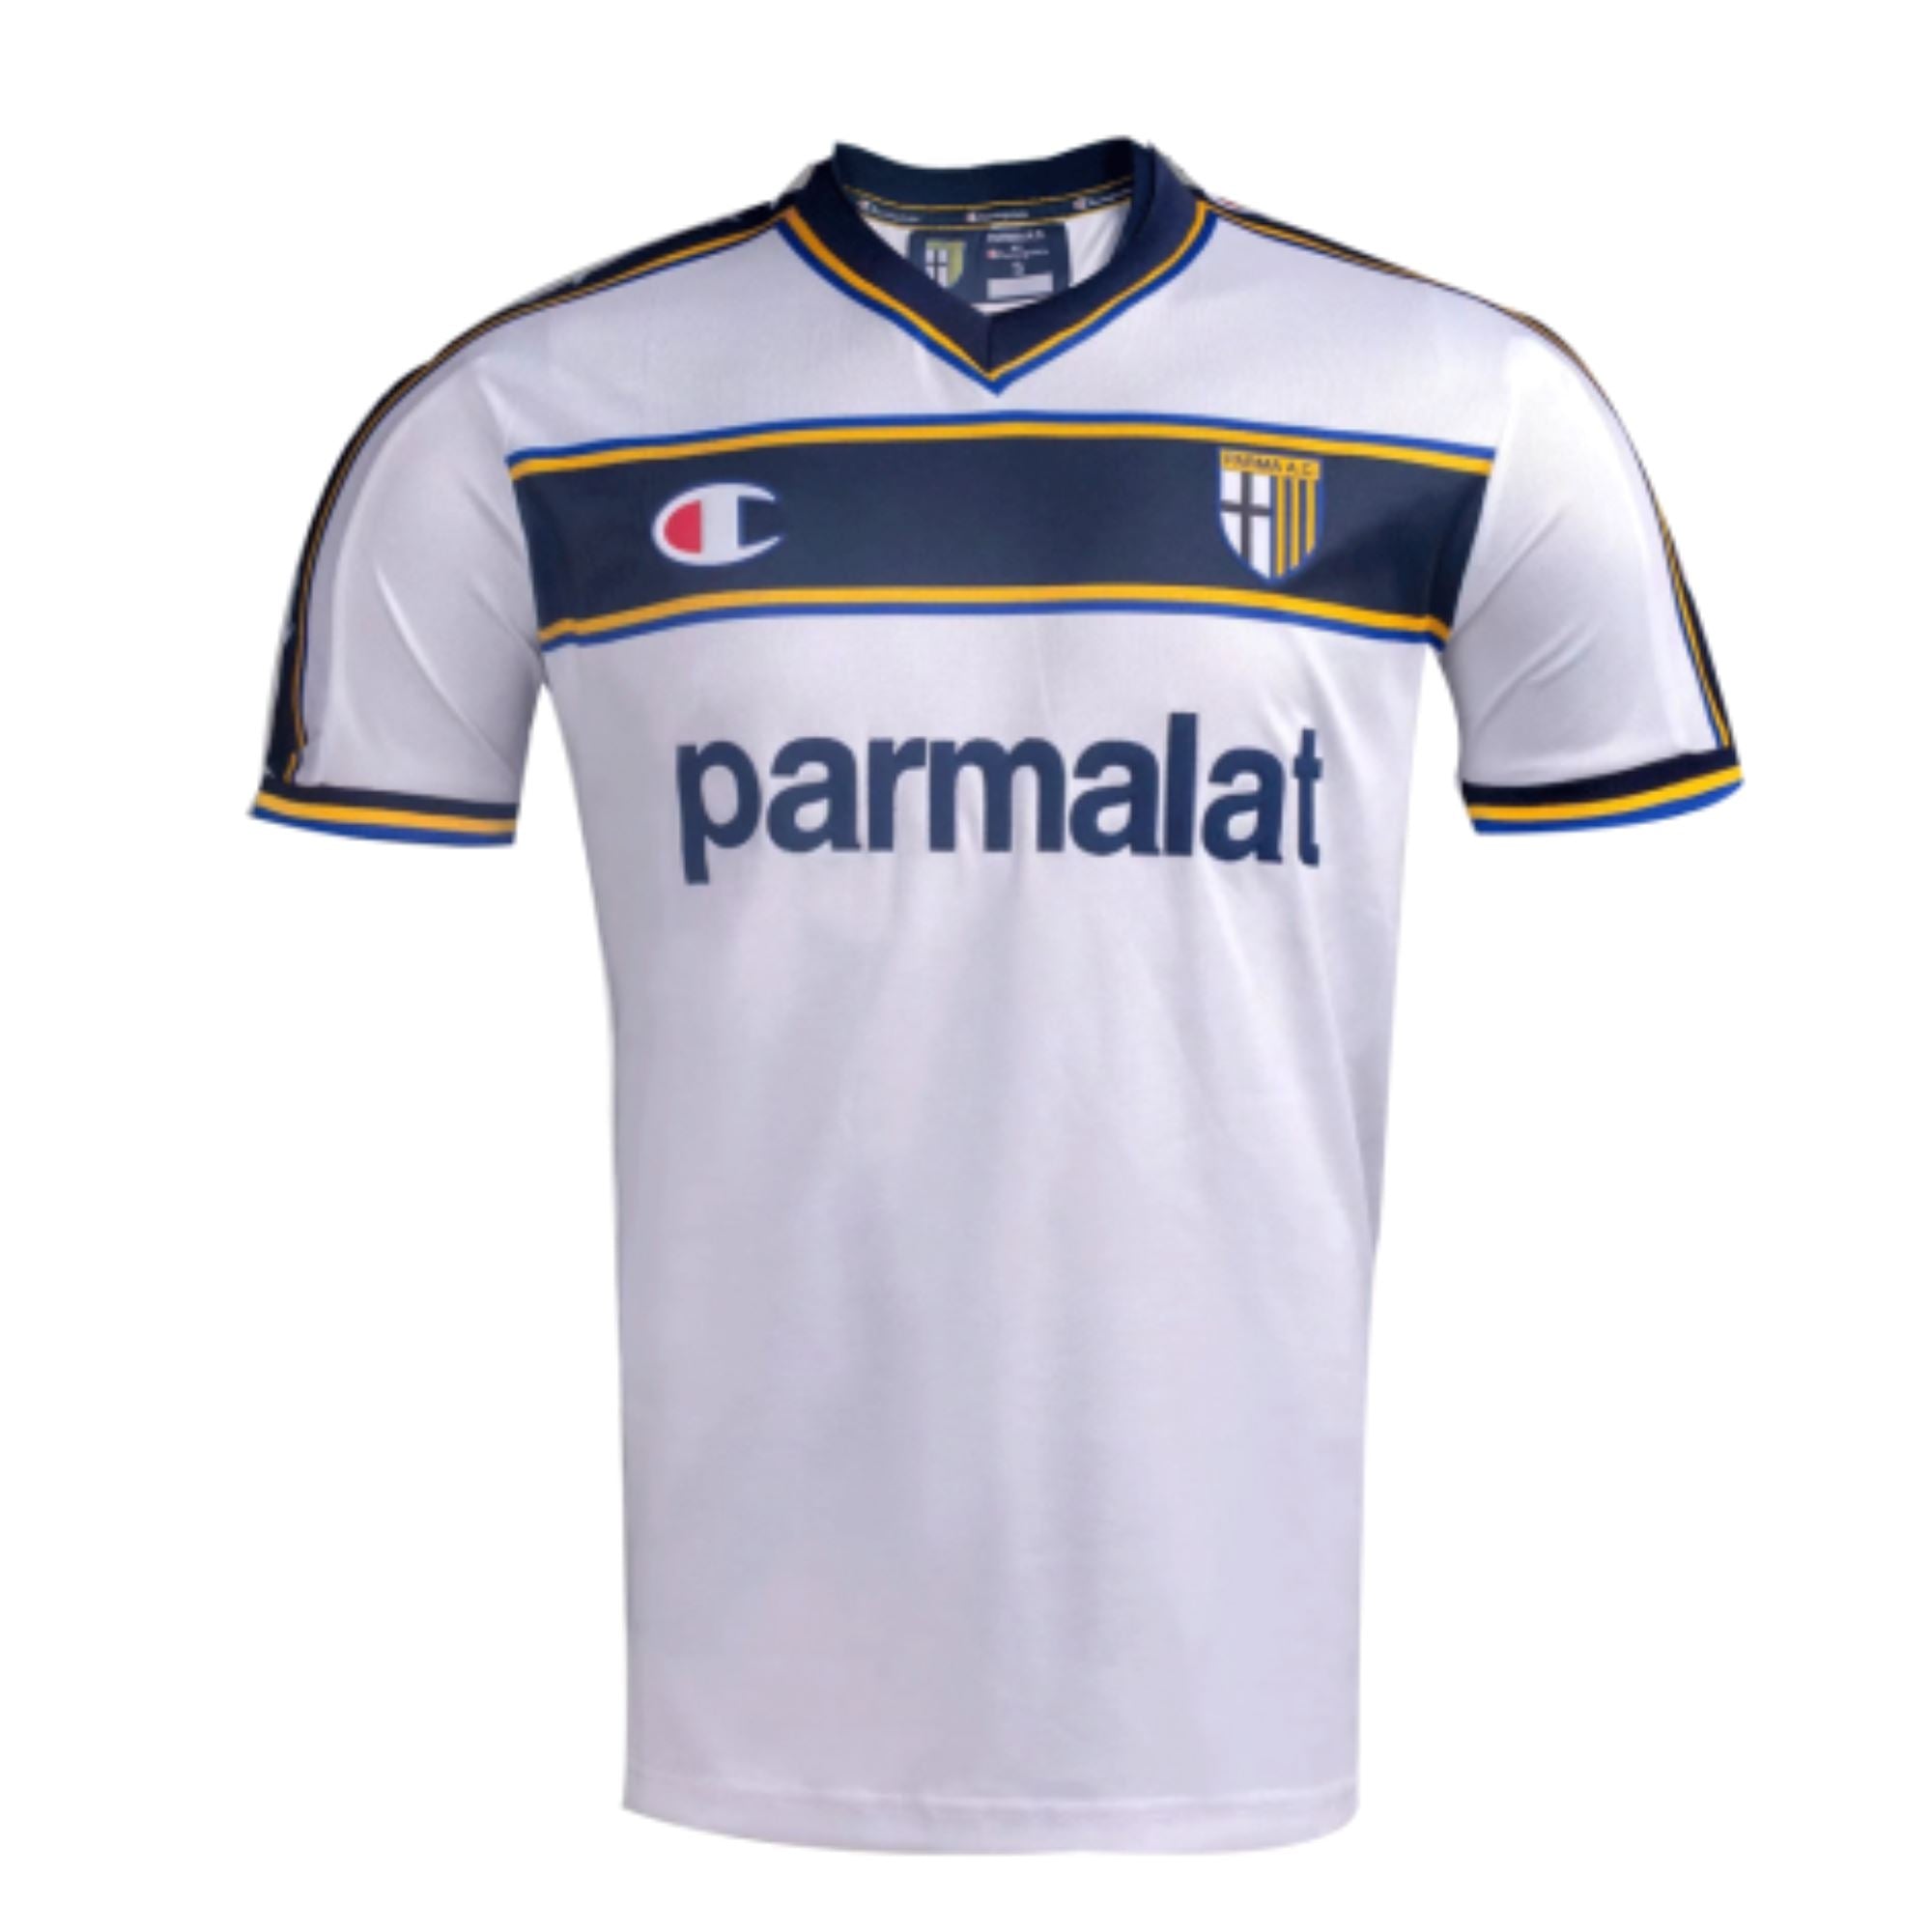 02/03 Parma Calcio Away Jersey - ITASPORT